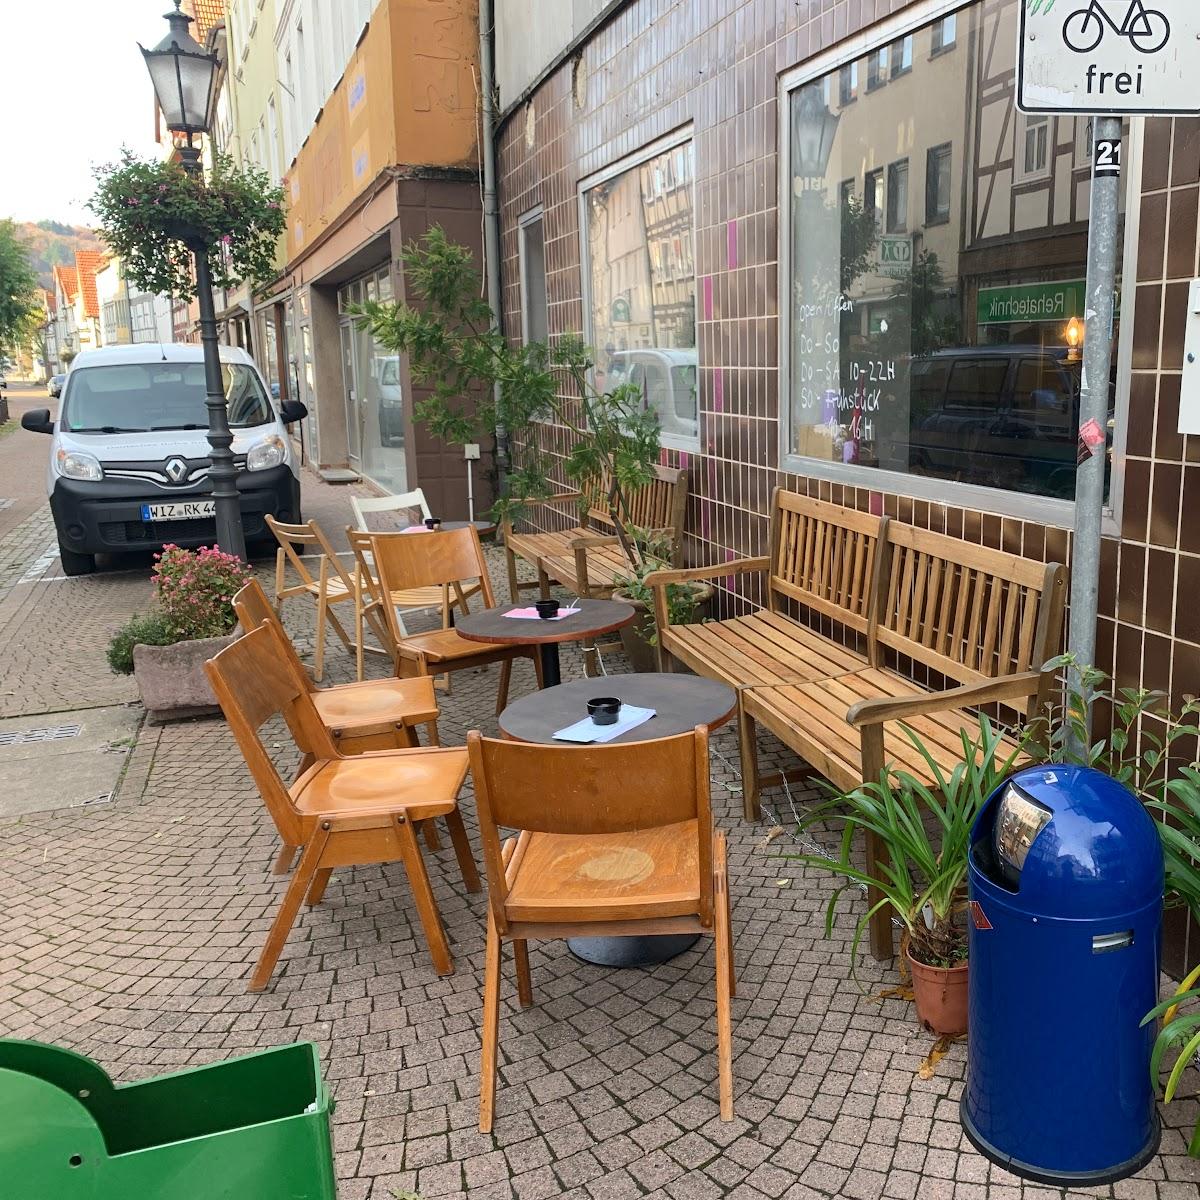 Restaurant "Runde Ecke Bar Cafe" in Witzenhausen